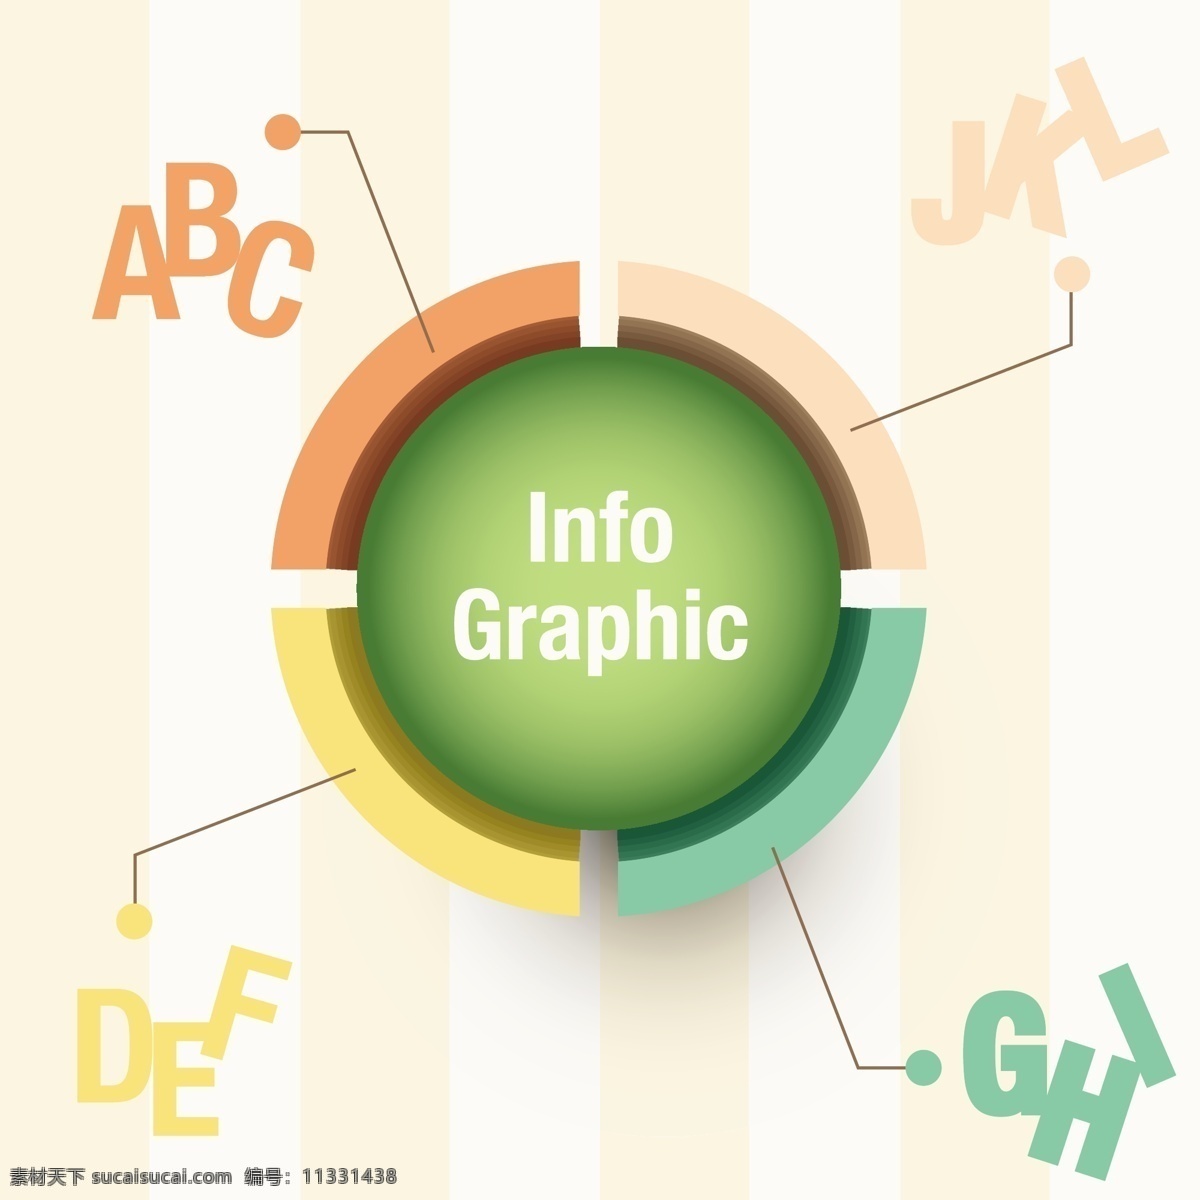 图表模板设计 图表 模板 市场营销 颜色 图形 图表中 数据 信息 增长 信息图形 颜色的选择